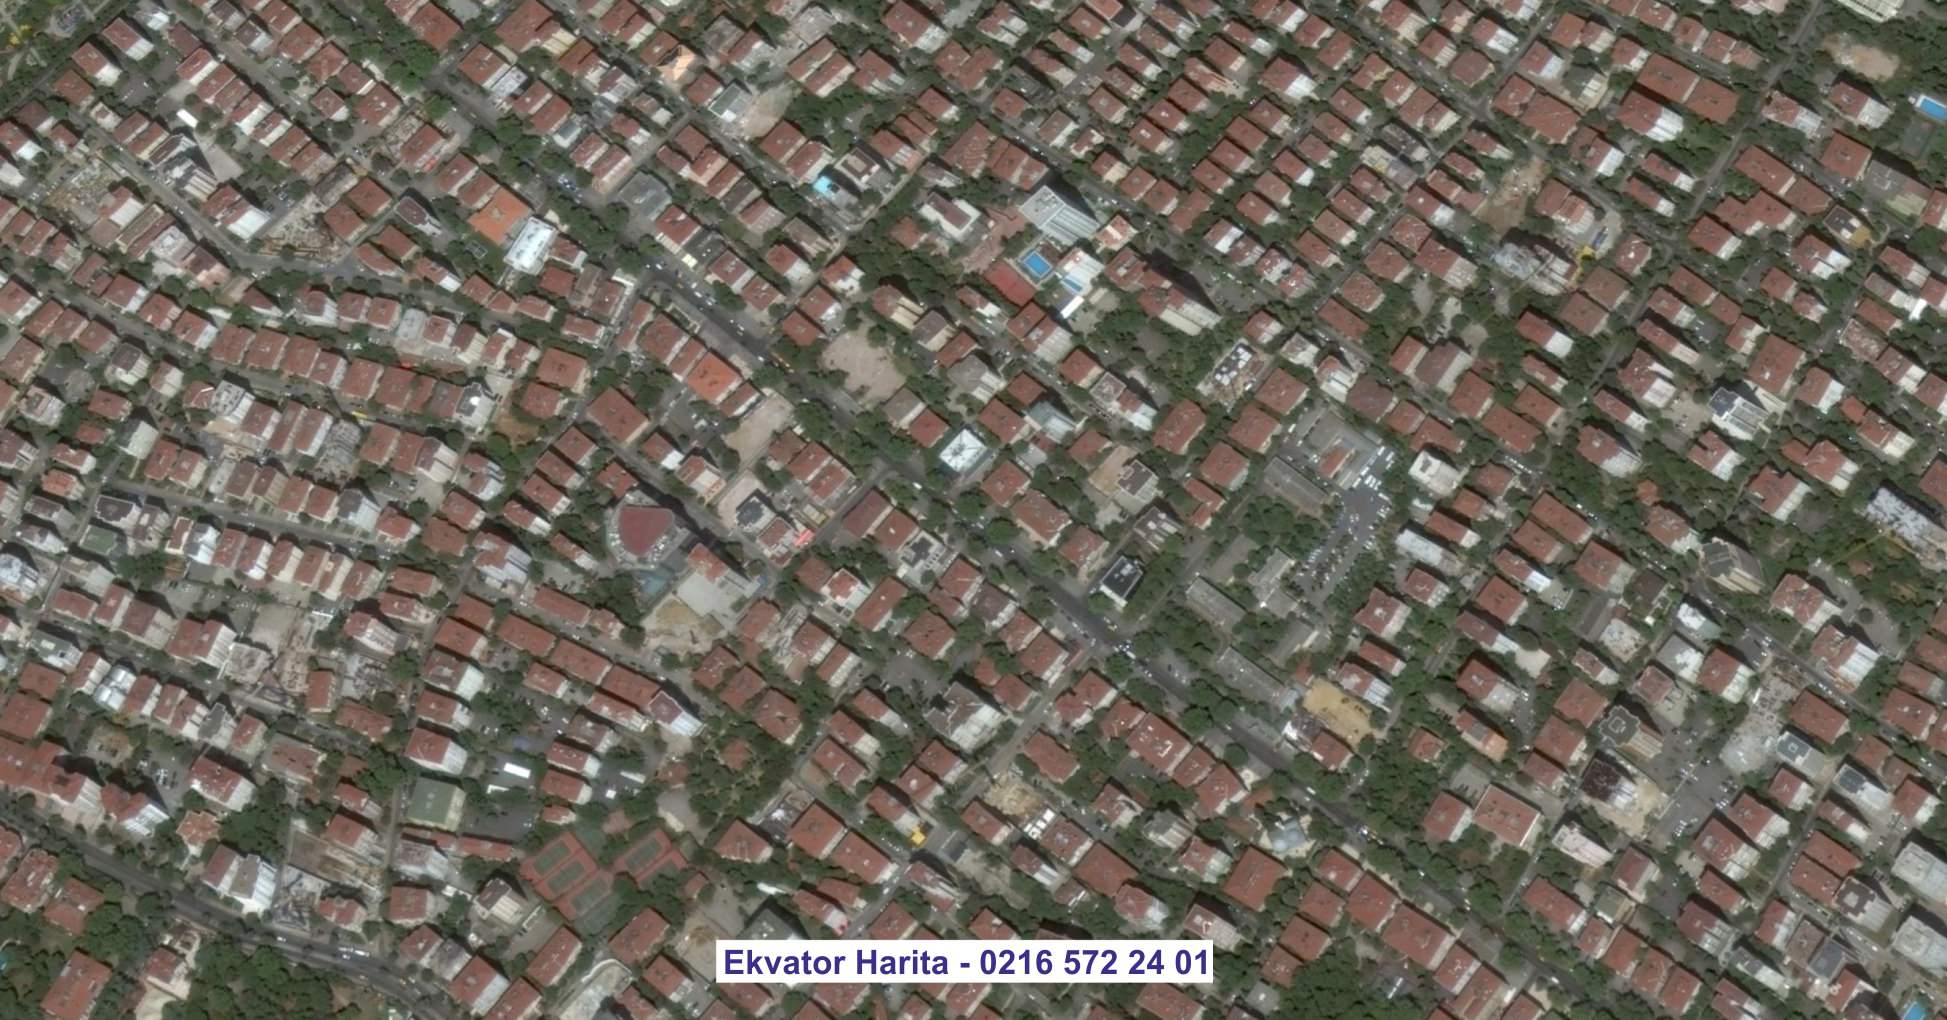 Bergama Uydu Görüntüsü Örnek Fotoğrafı